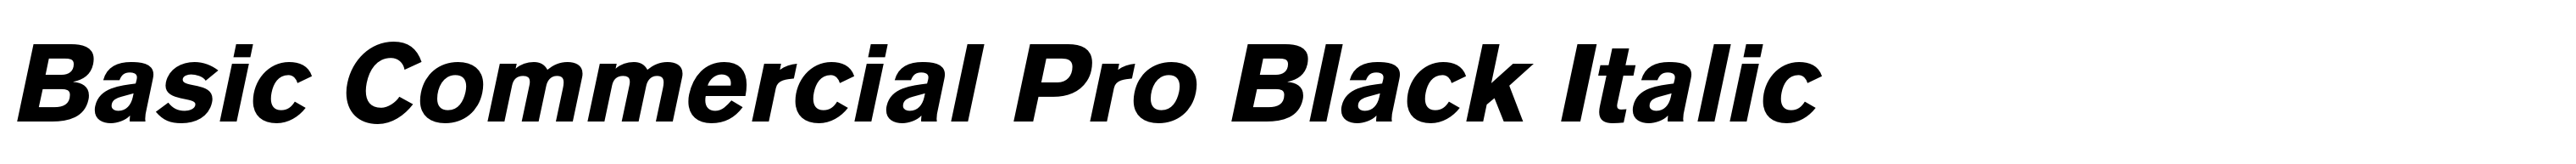 Basic Commercial Pro Black Italic